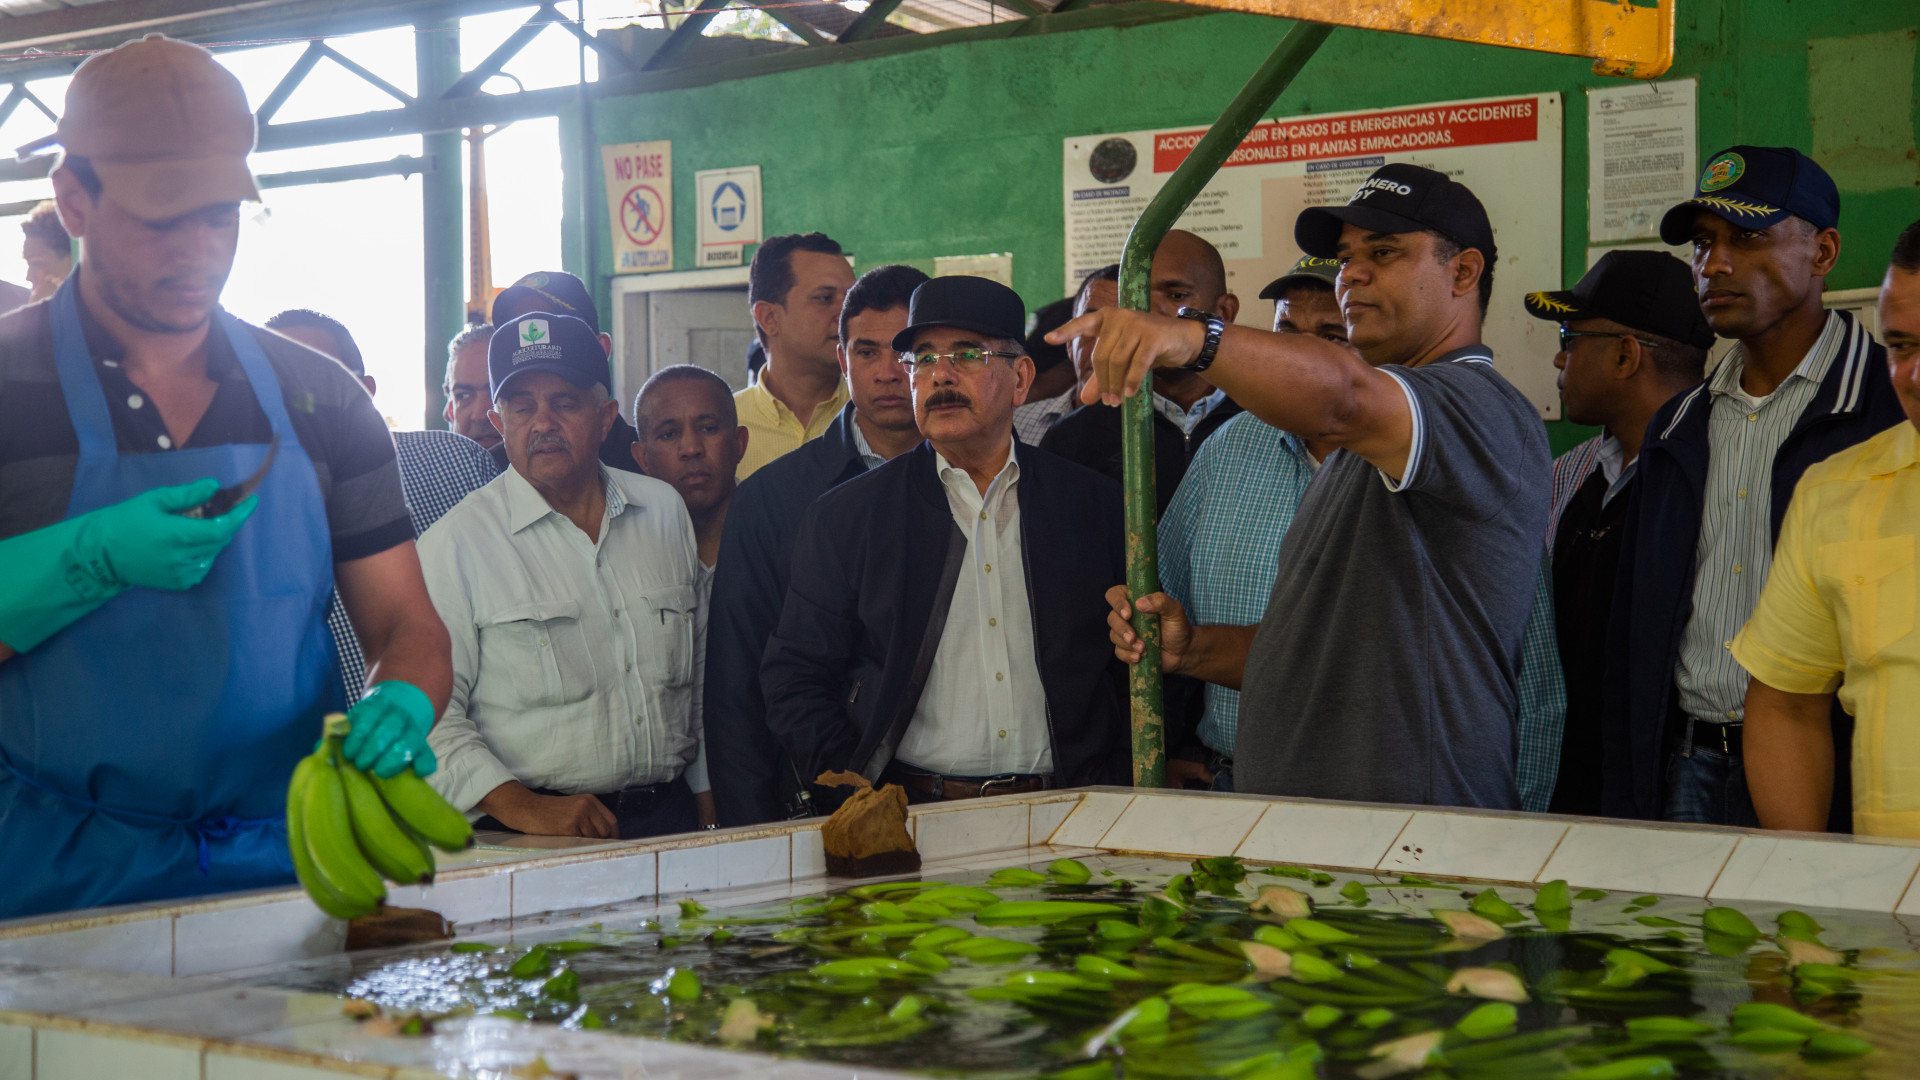 REPÚBLICA DOMINICANA: Danilo Medina conmemora 207 aniversario natalicio Duarte aumentando competitividad de productores y ganaderos de Valverde y Montecristi